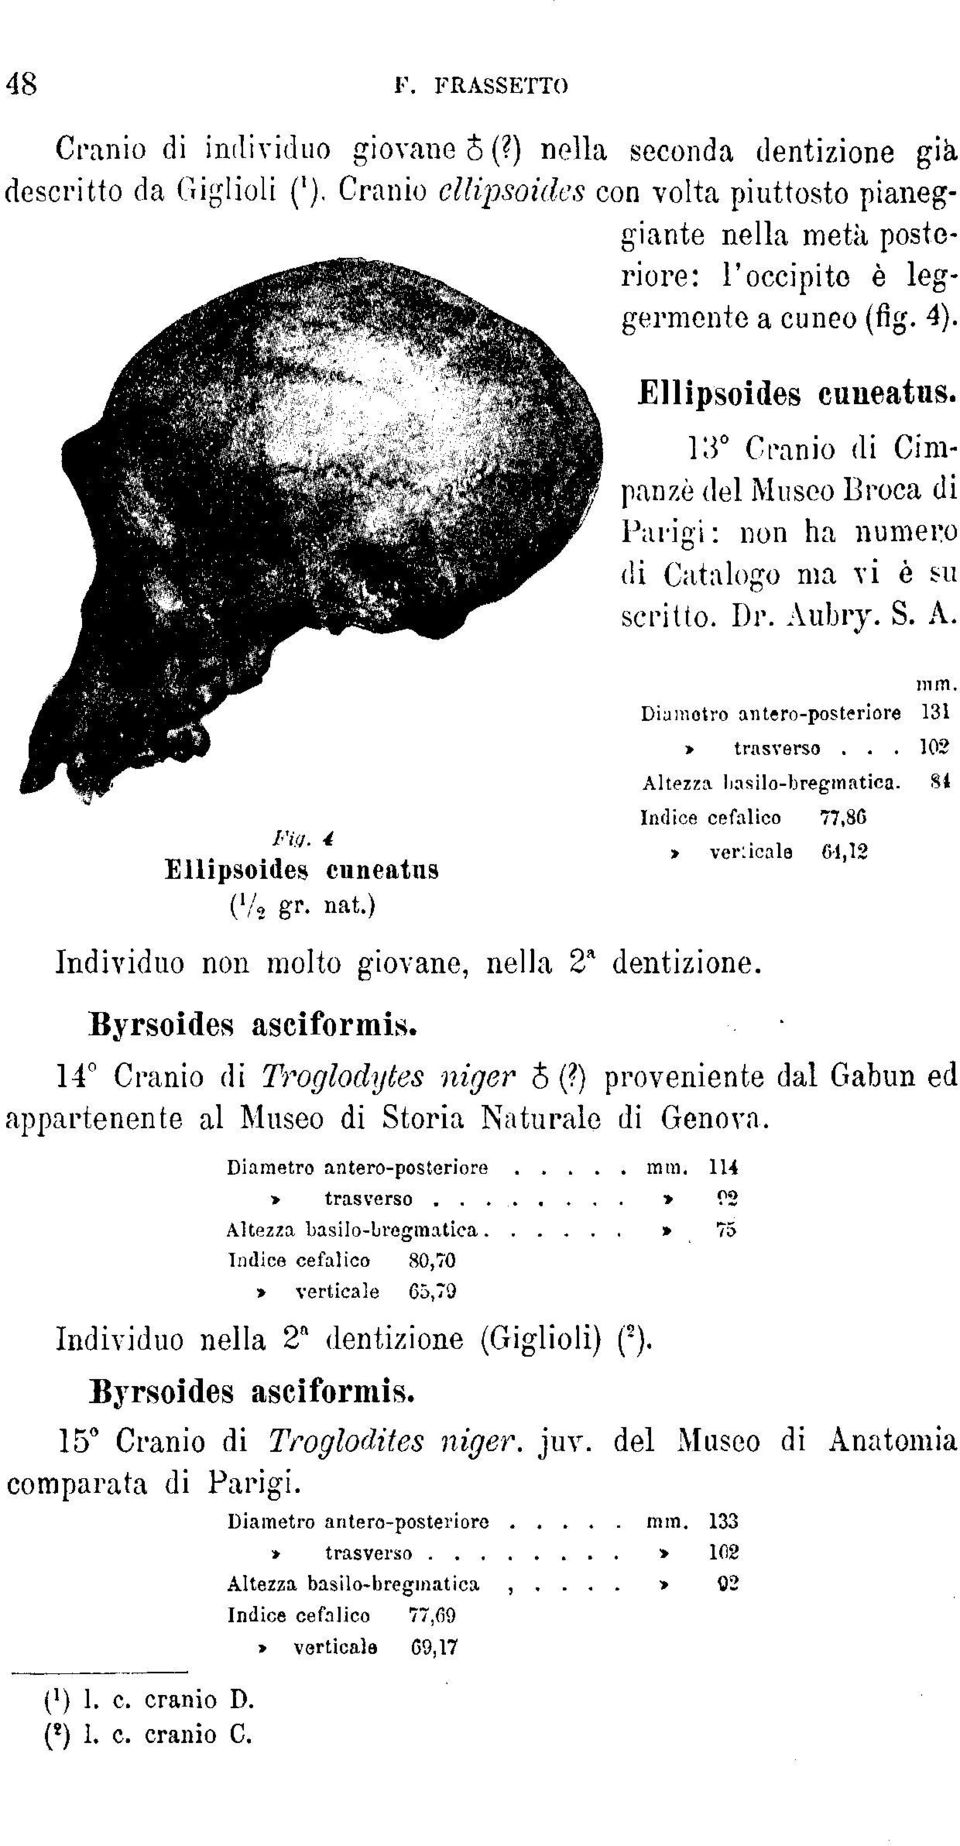 13 Cranio di Cimpanzè del Museo Broca di Parigi : non ha numero di Catalogo ma vi è su scritto. Dr. Aubry. S. A. Fig. 4 Ellipsoides cuneatus ( l / 2 gr. nat.